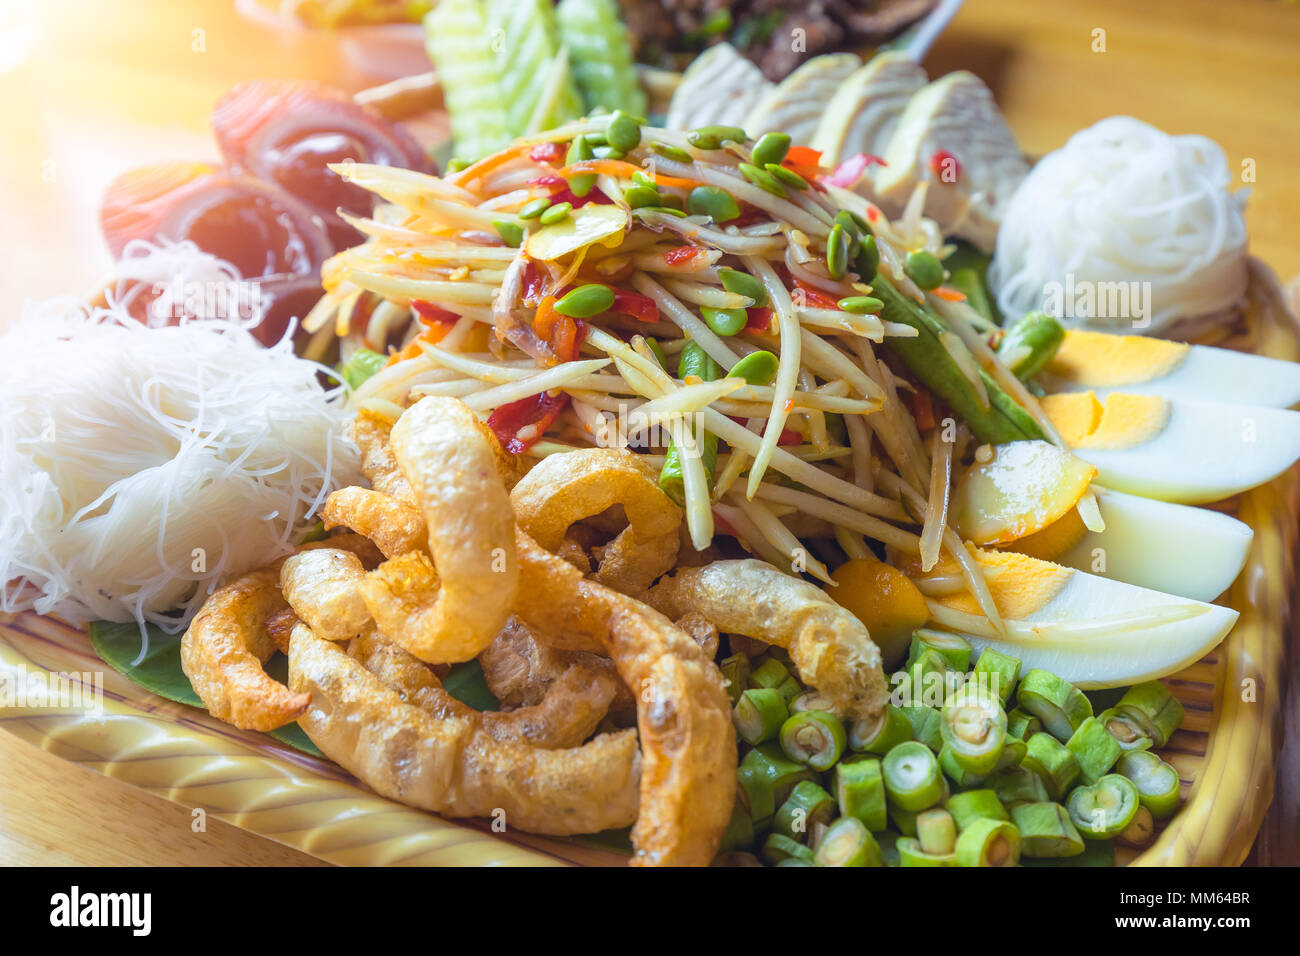 Berühmte thailändische Essen, Papaya Salat, spicy thai food. Stockfoto